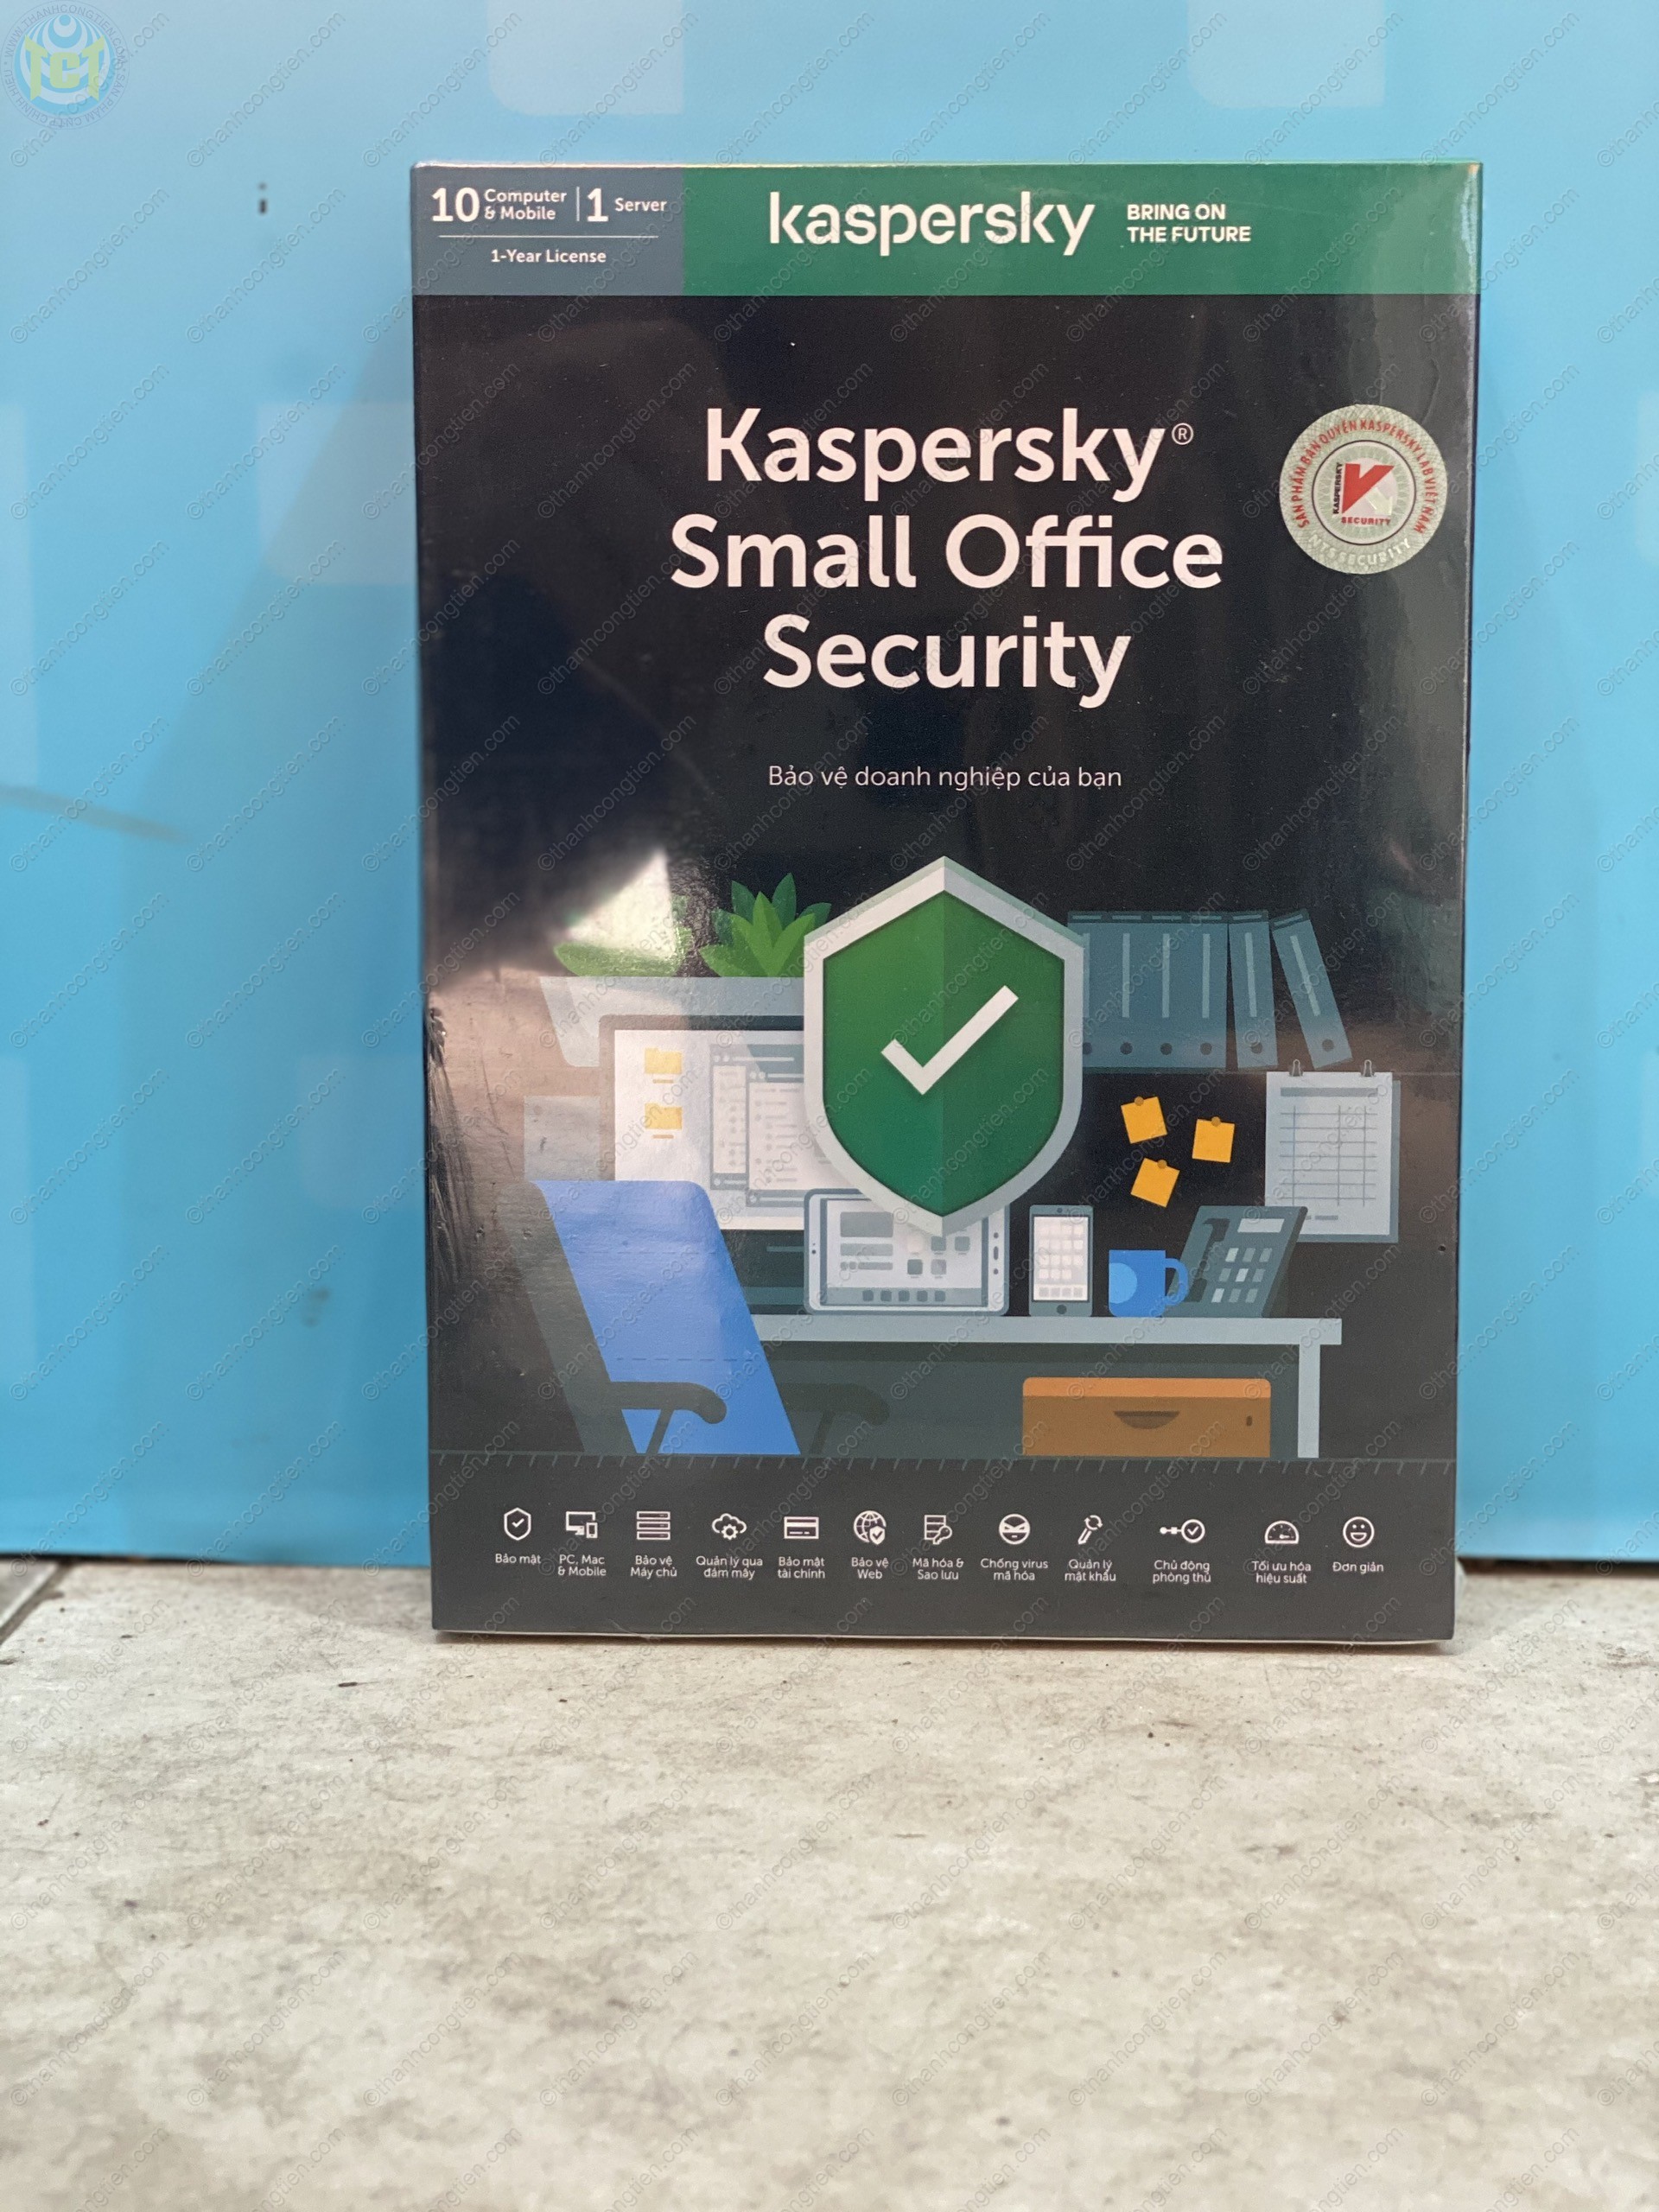 KASPERSKY Small Office Security 10 PCs + 10 Mobile + 1 File Server chính  hãng chính hãng bảo vệ 1 năm – Thành Công Tiến